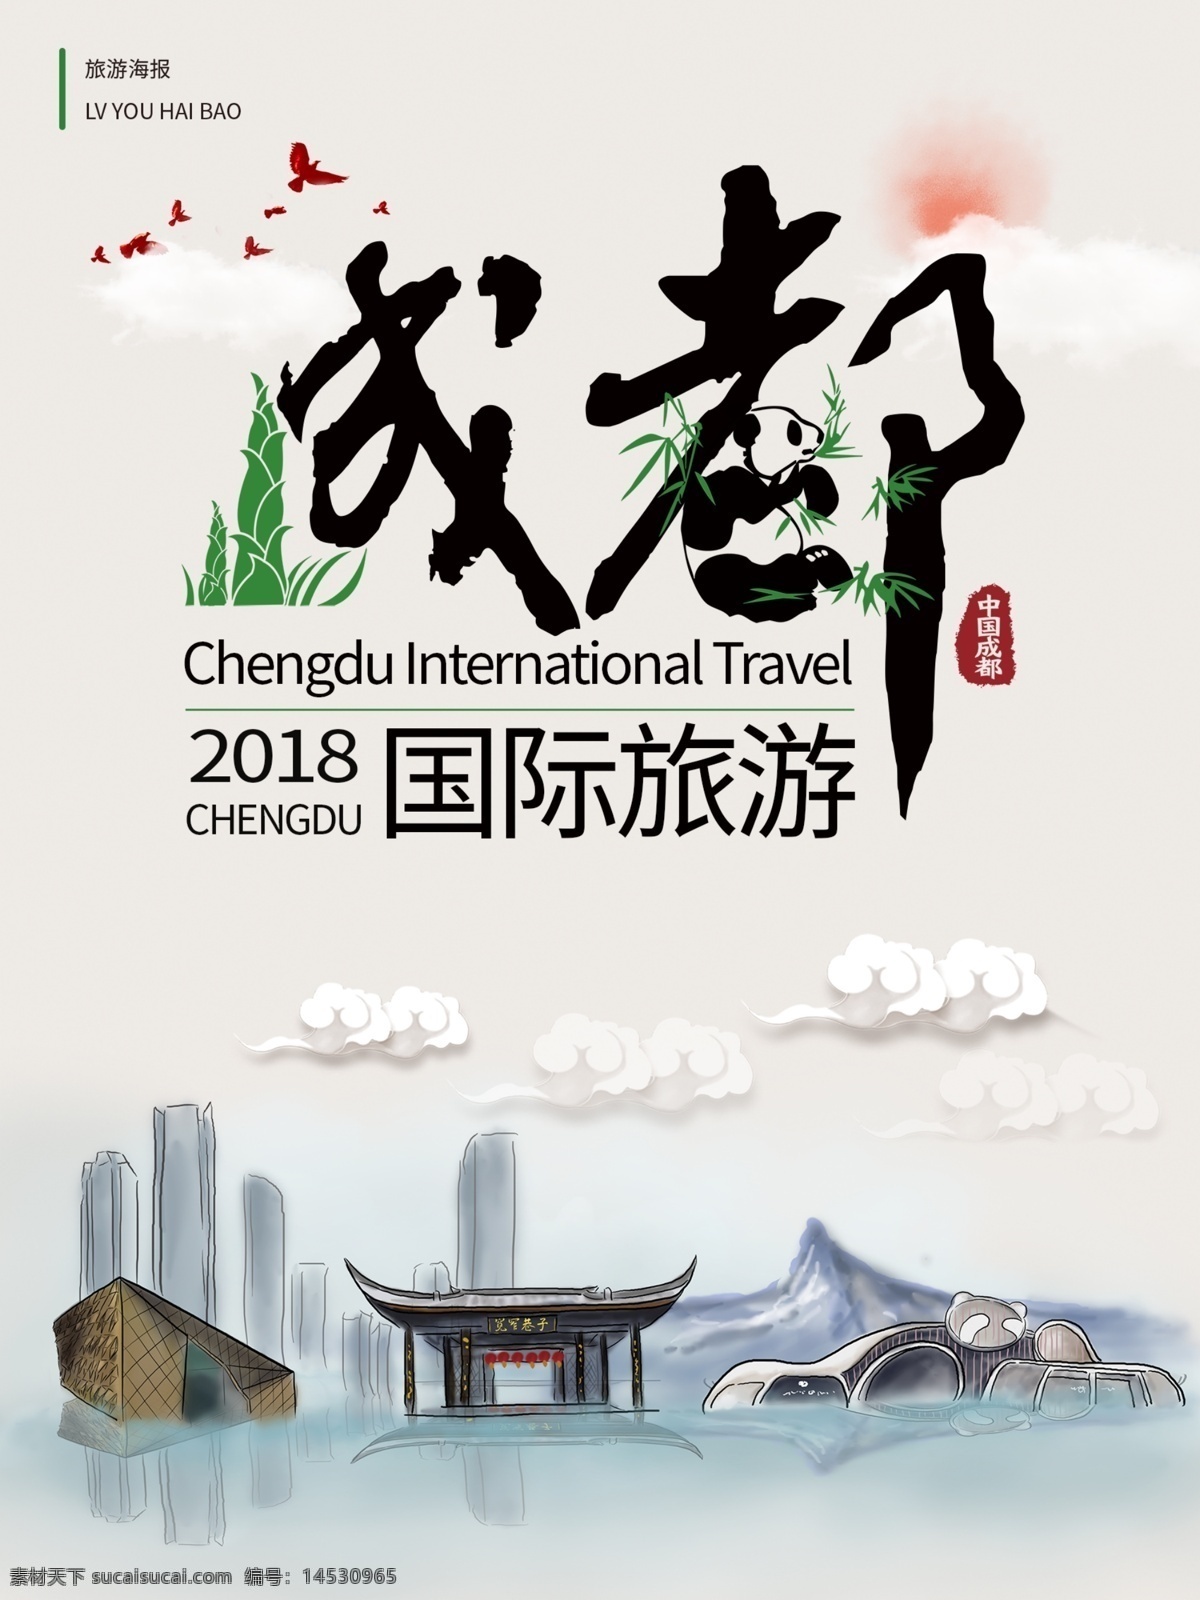 原创 中国 风 成都 海报 旅游 中国风 竹子 云 太阳 熊猫 国际 宽窄巷子 山 高楼